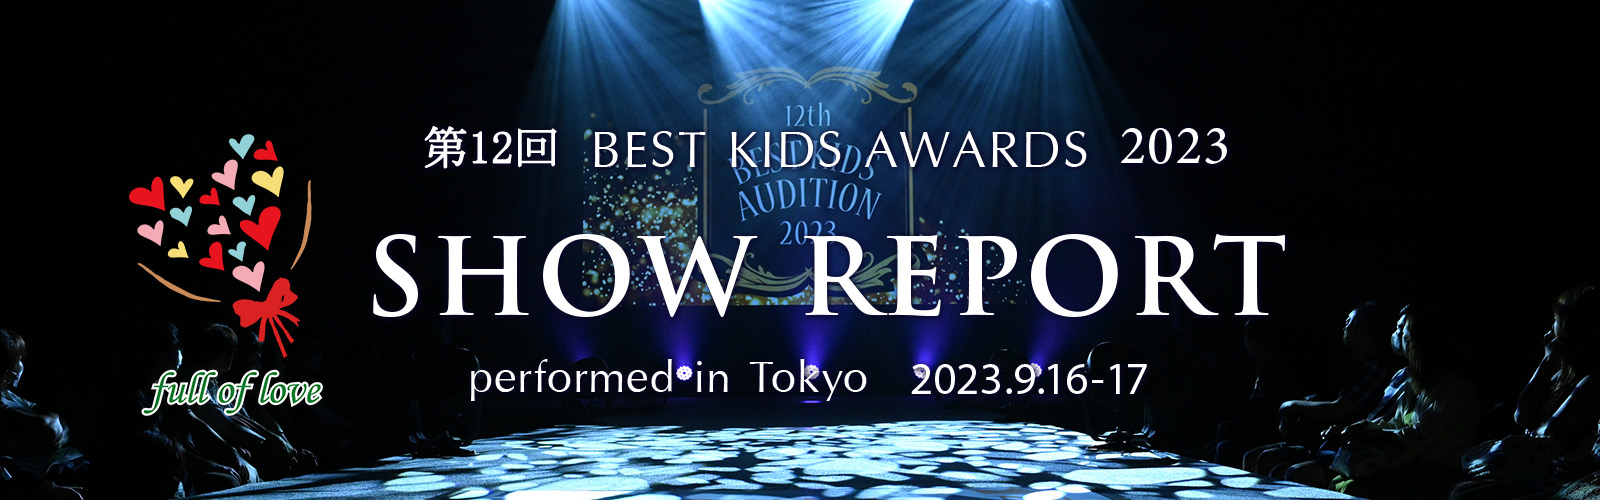 第12回BEST KIDS AUDITION 2023 SHOW REPORT